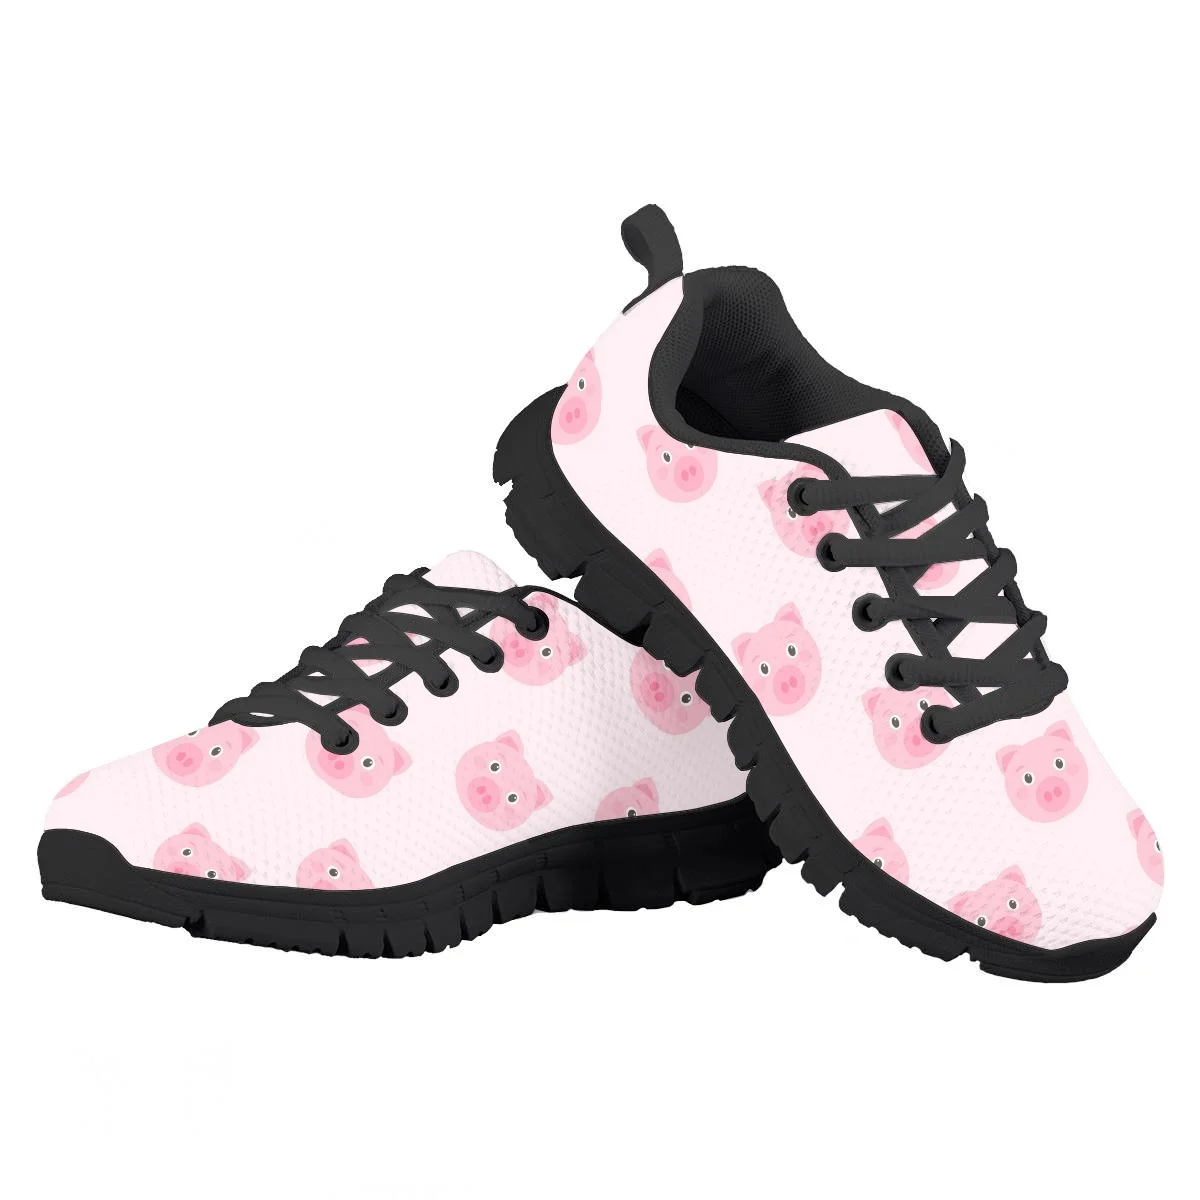 Cute Pink Piggy Pattern Children's Running Shoes Autumn Winter Tennis Sneaker Work Hospital Jogging Lightweight Lace Up Footwear